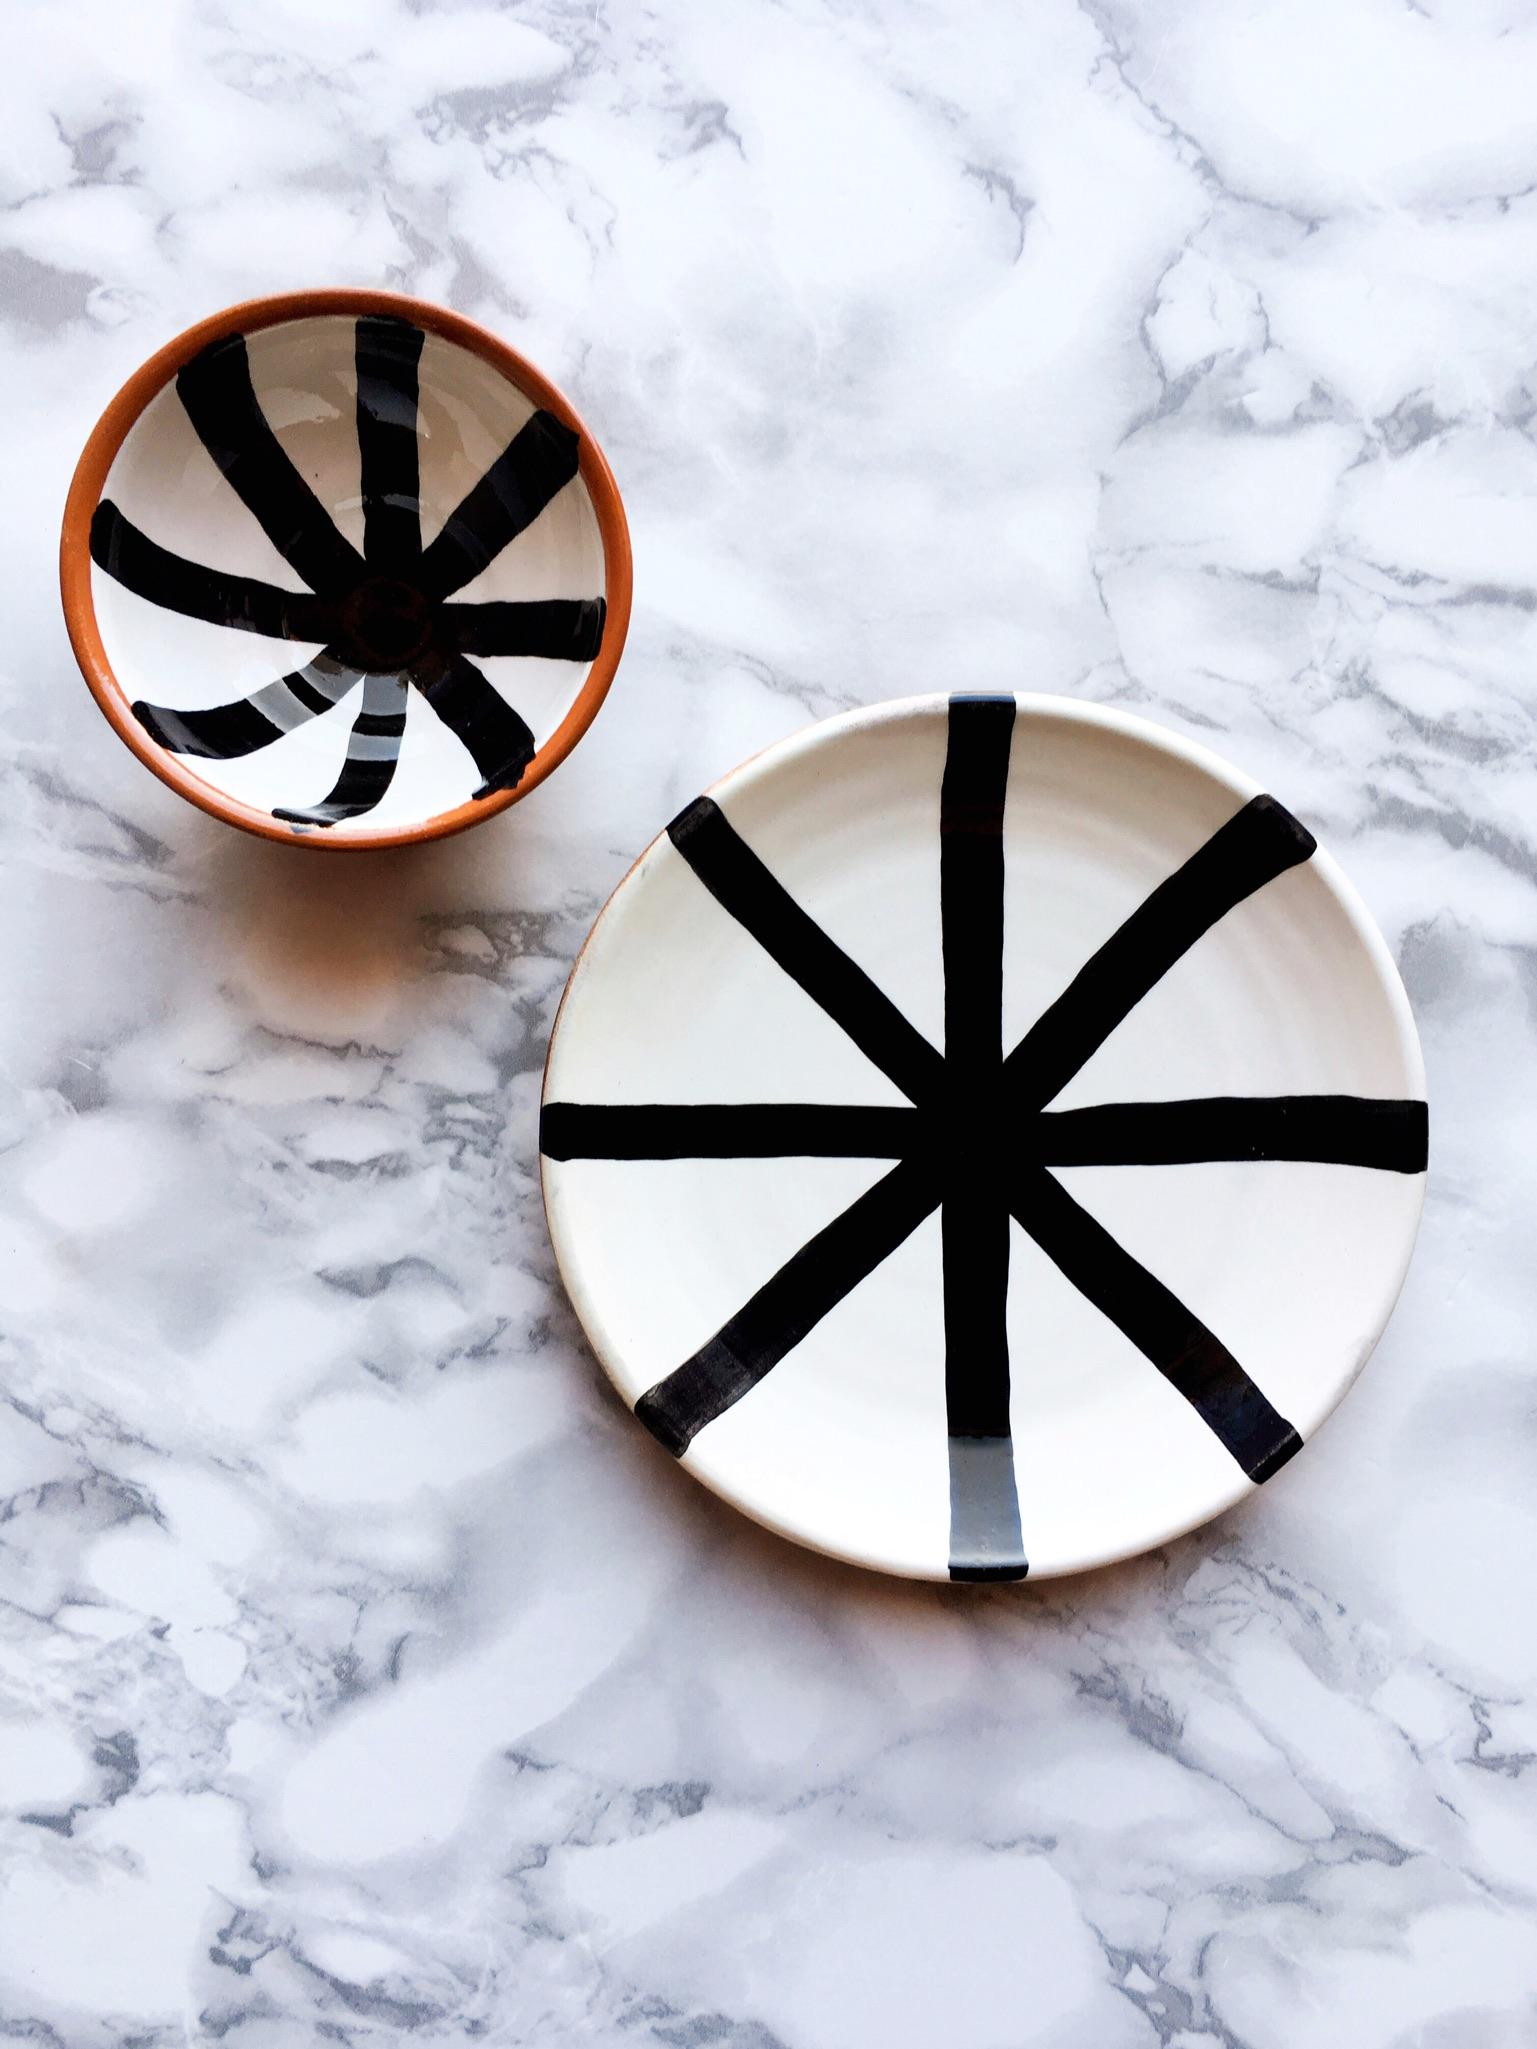 Portuguese Handmade Ceramic Segment Salad Plate with Graphic Black & White Design, in Stock For Sale